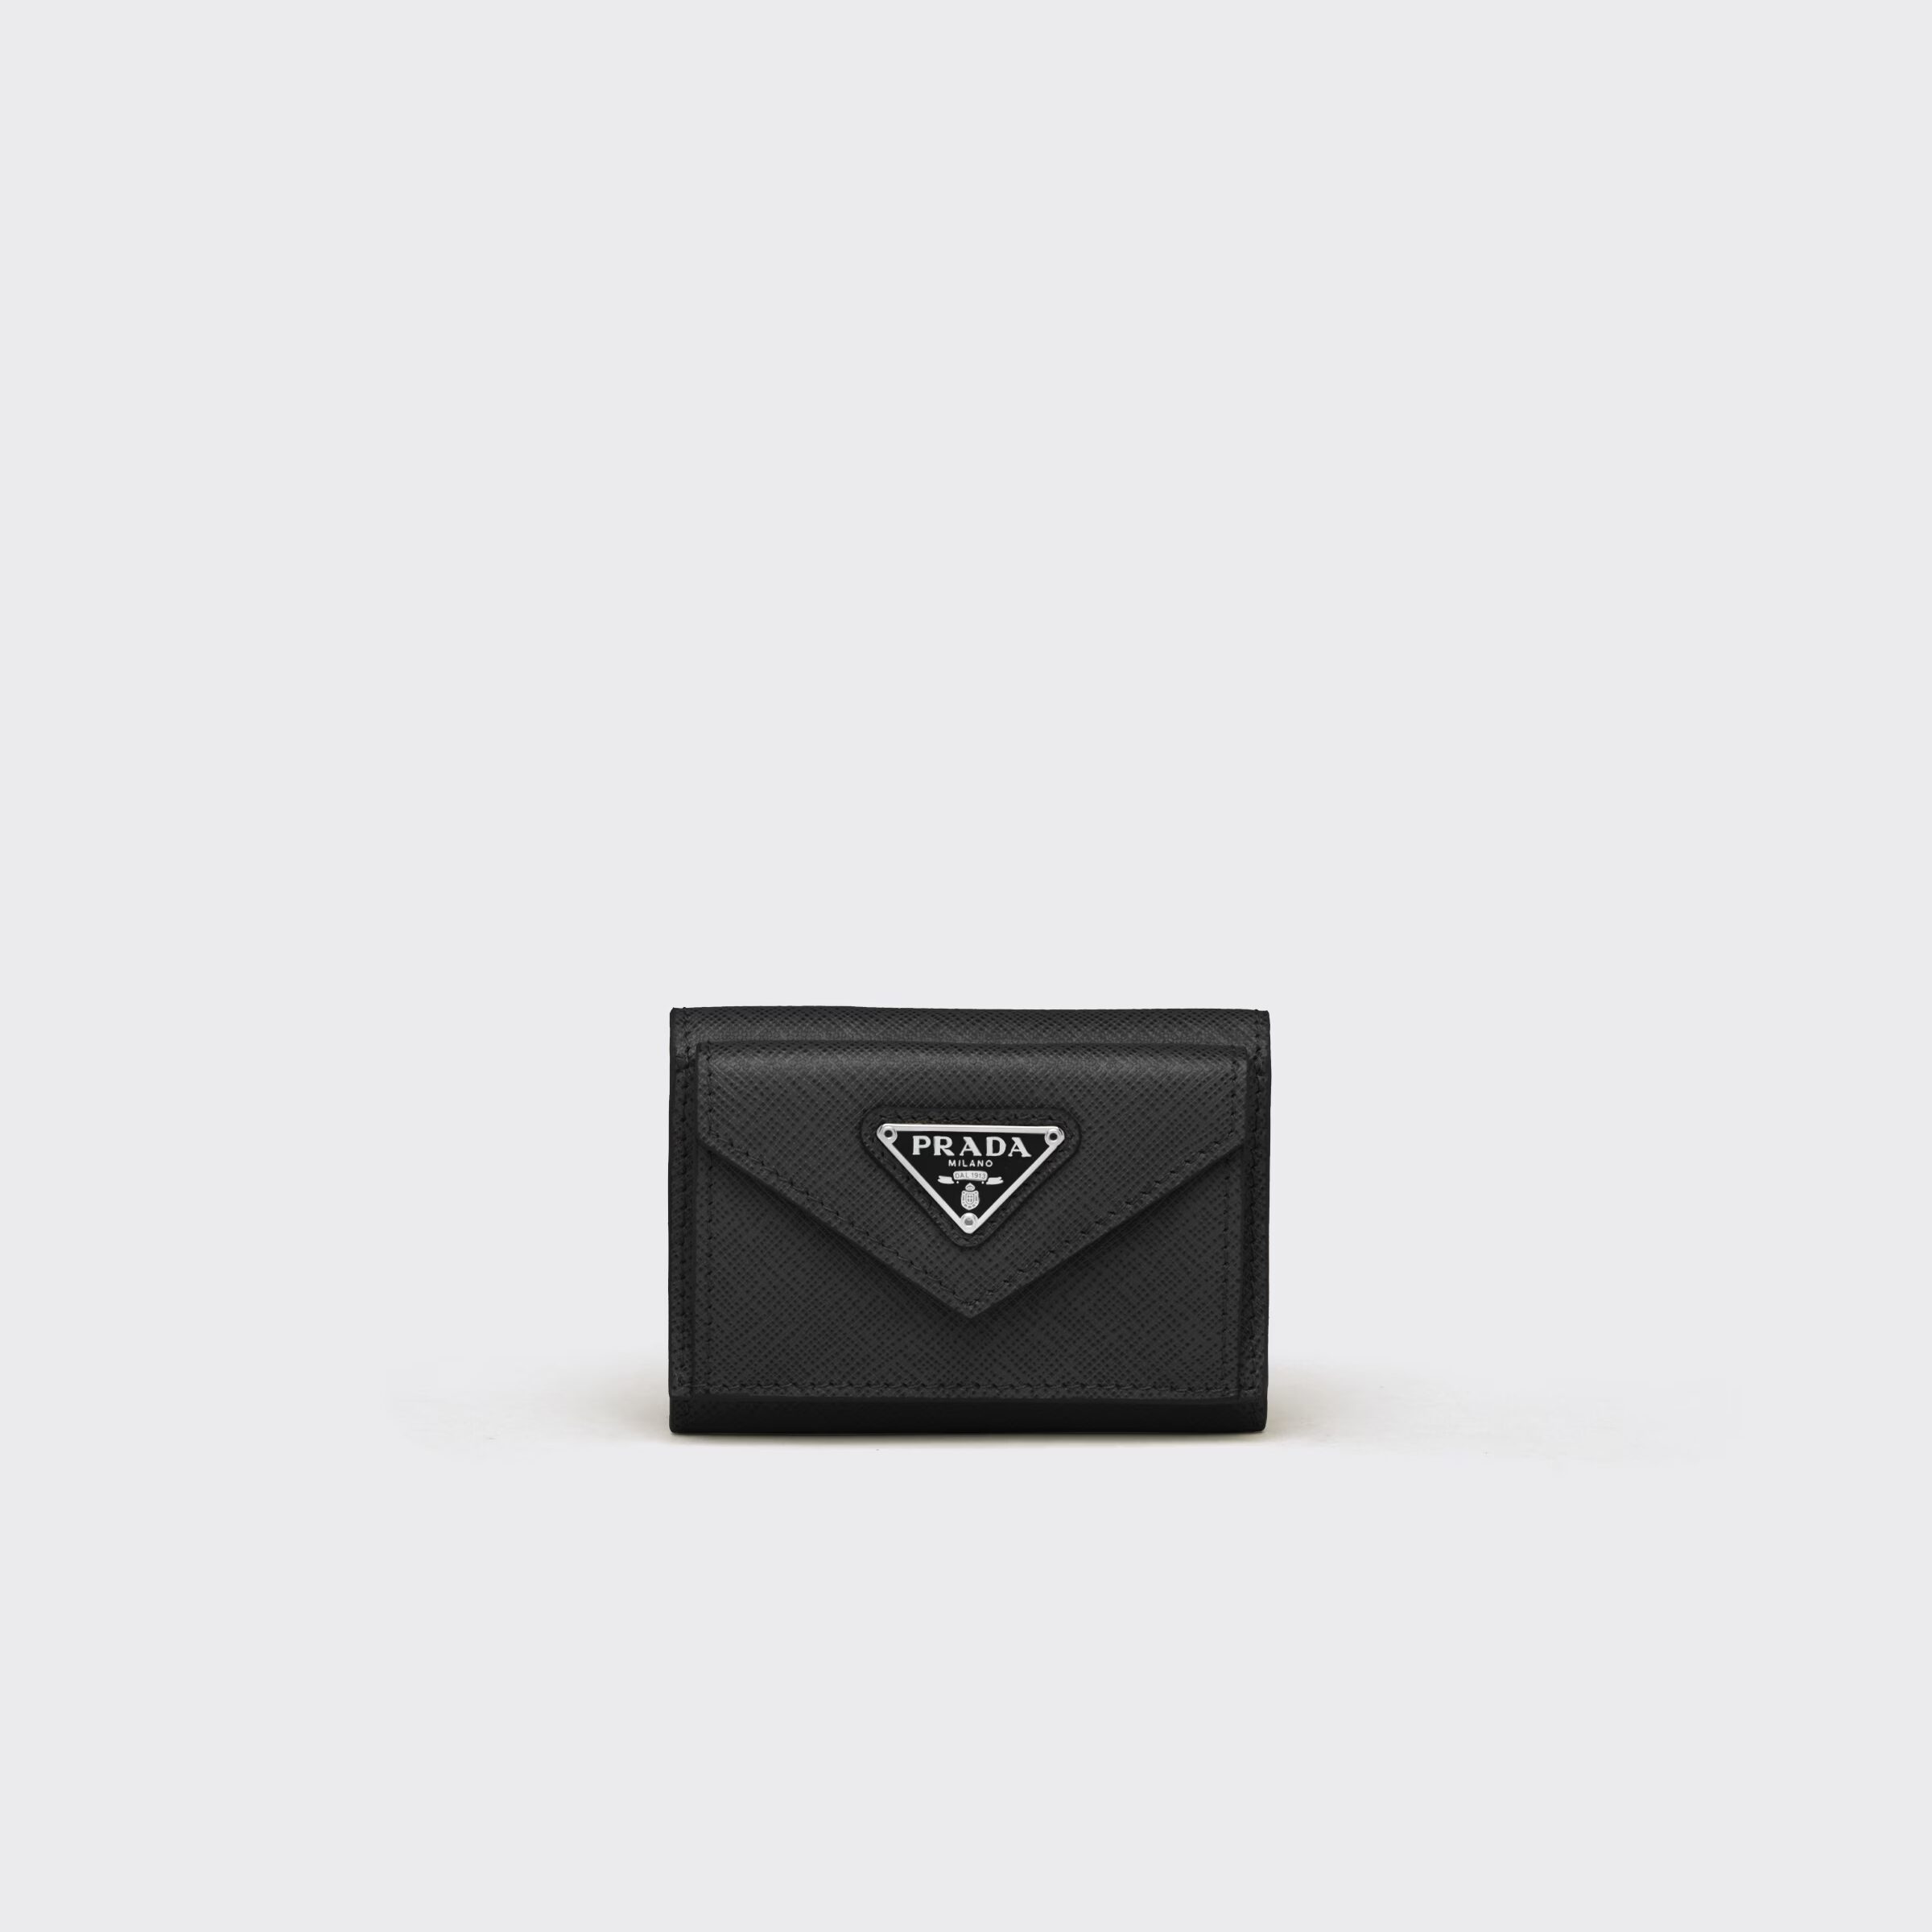 プラダ サフィアーノトライアングル 財布  素材:レザー 色:ブラック